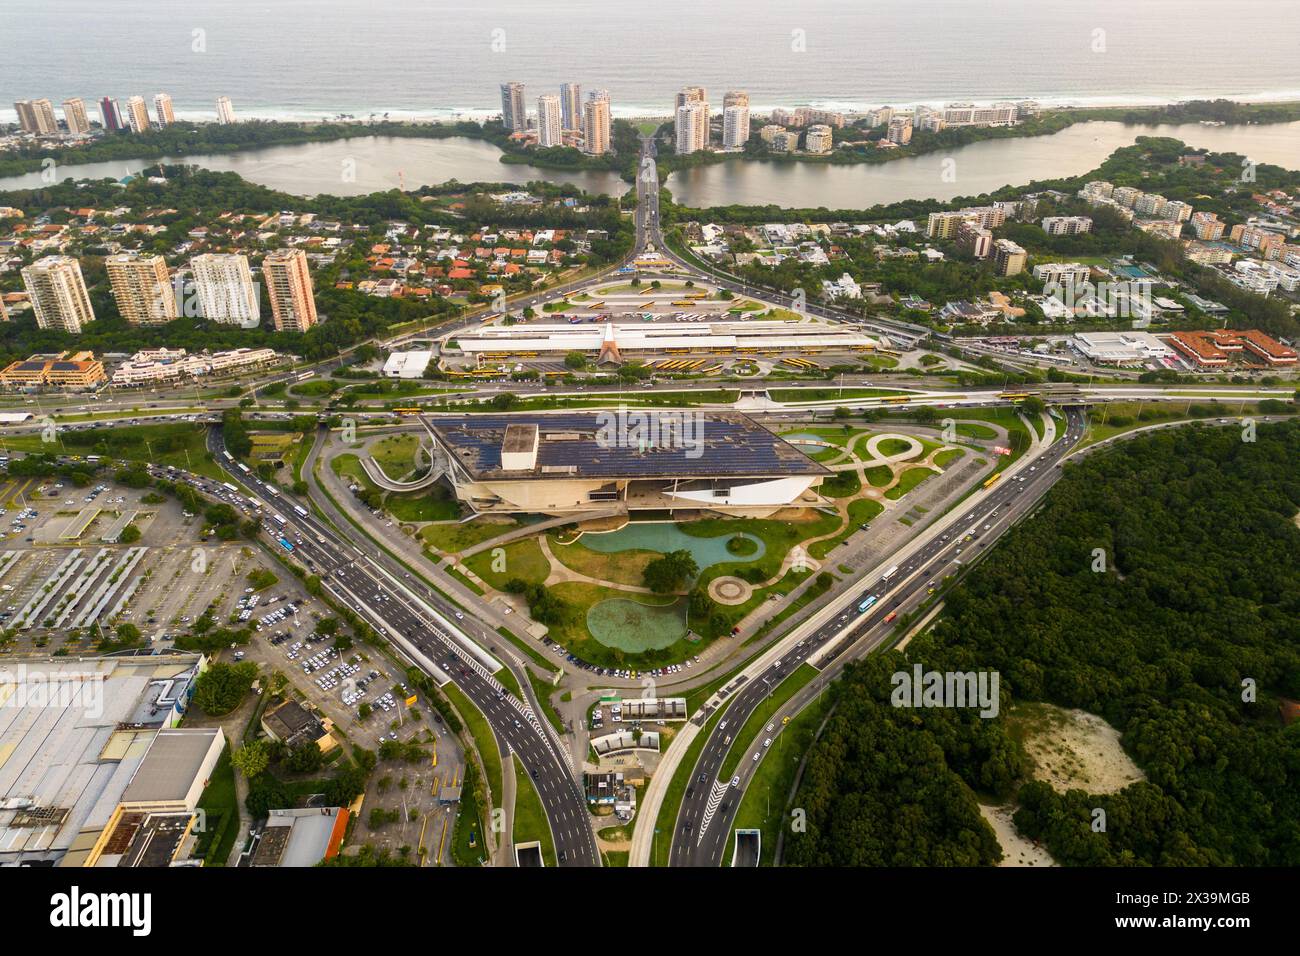 Aerial View of Barra da Tijuca District With Alvorada Bus Terminal, Cidade das Artes Cultural Complex and Ocean in the Horizon in Rio de Janeiro Stock Photo